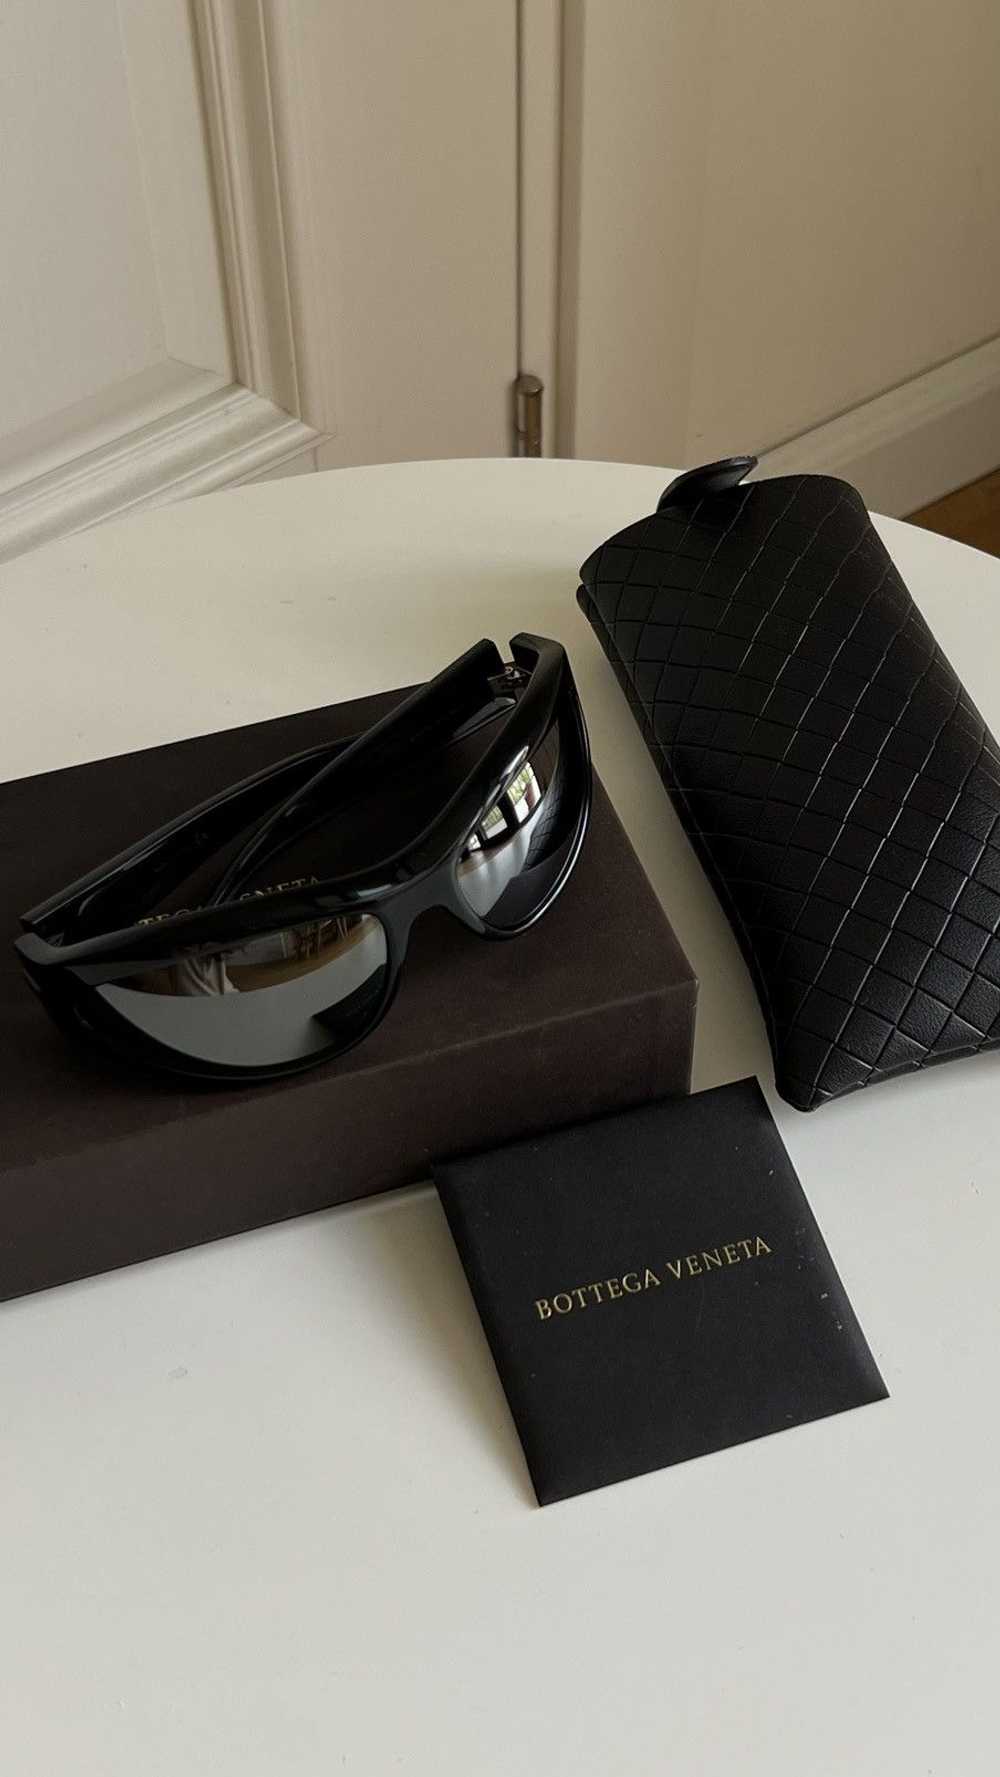 Bottega Veneta Bottega veneta shades / sunglasses - image 10